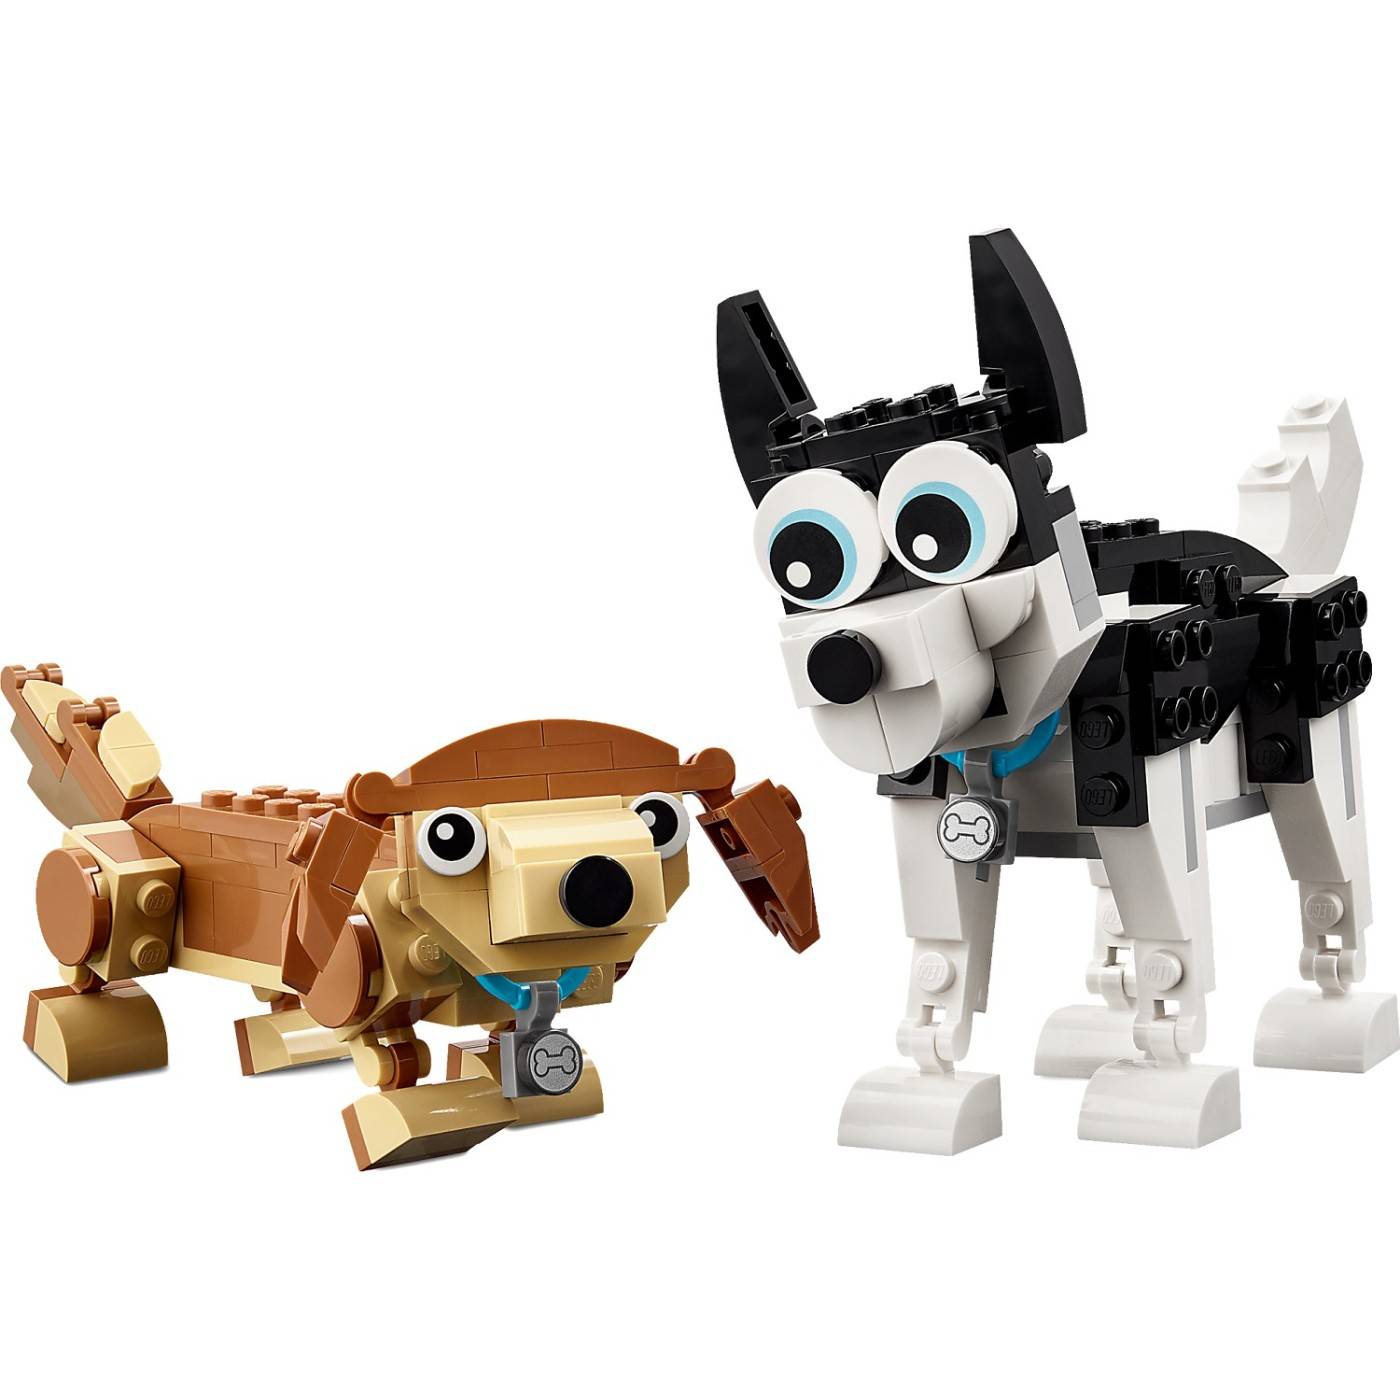 LEGO 31137 CREATOR ADORABLE DOGS